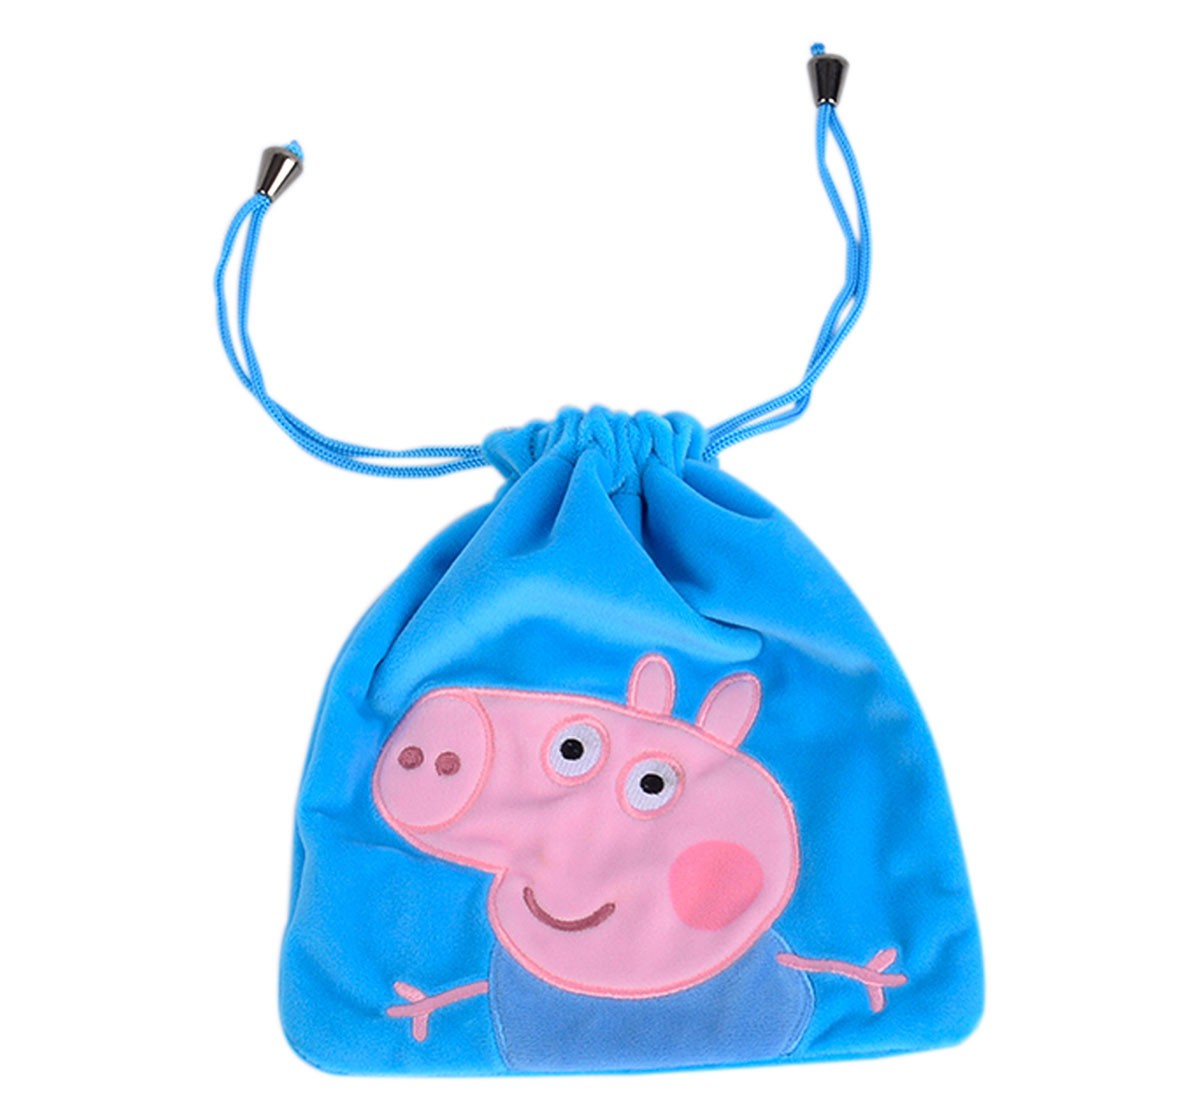 George Pig Blue Plush Toy Bag, 2Y+ 